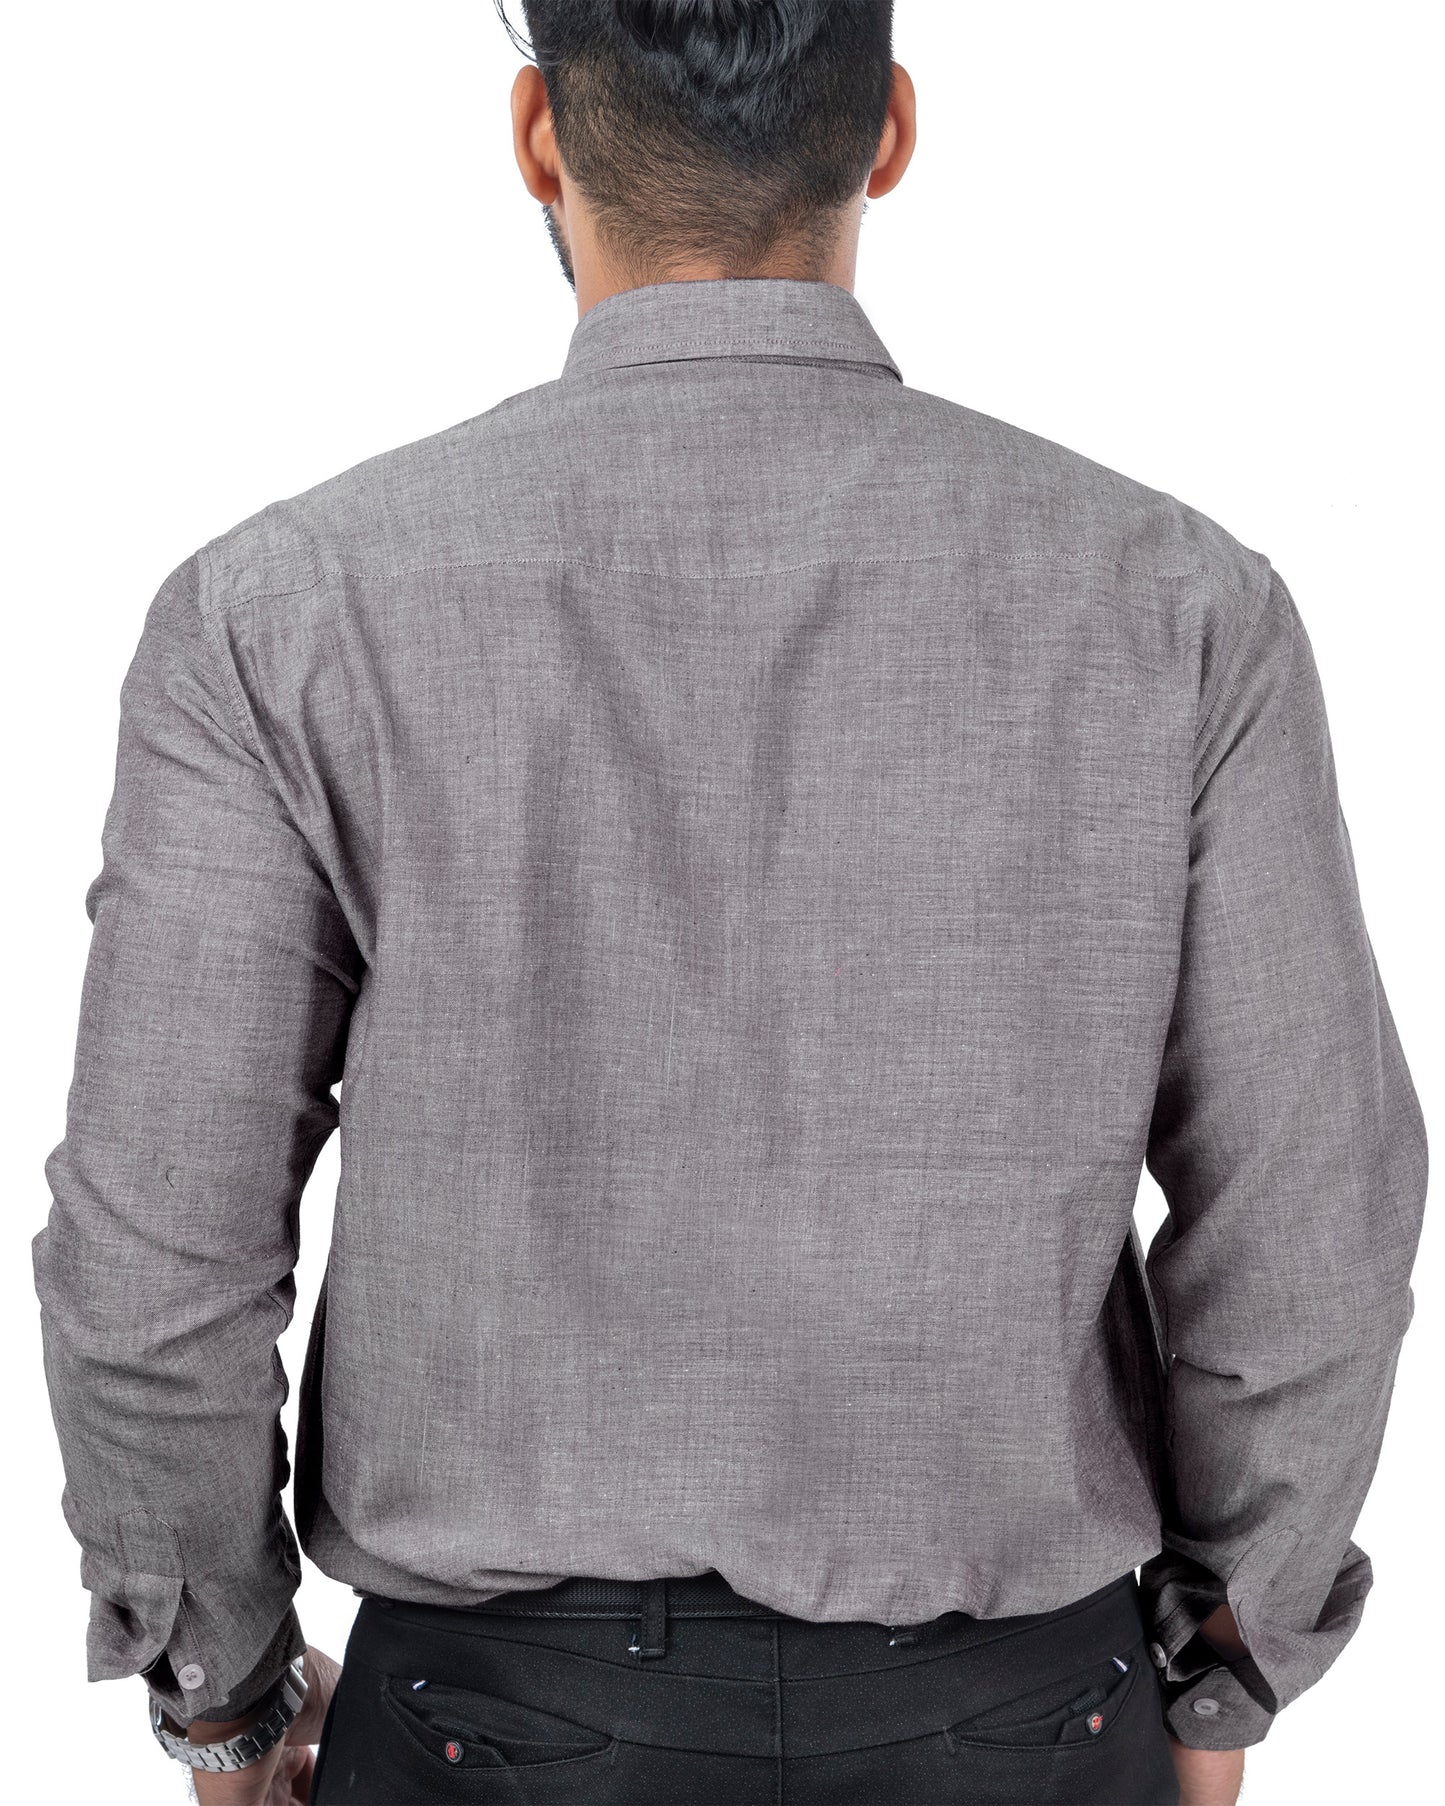 Full Sleeve Shirt Steel Grey